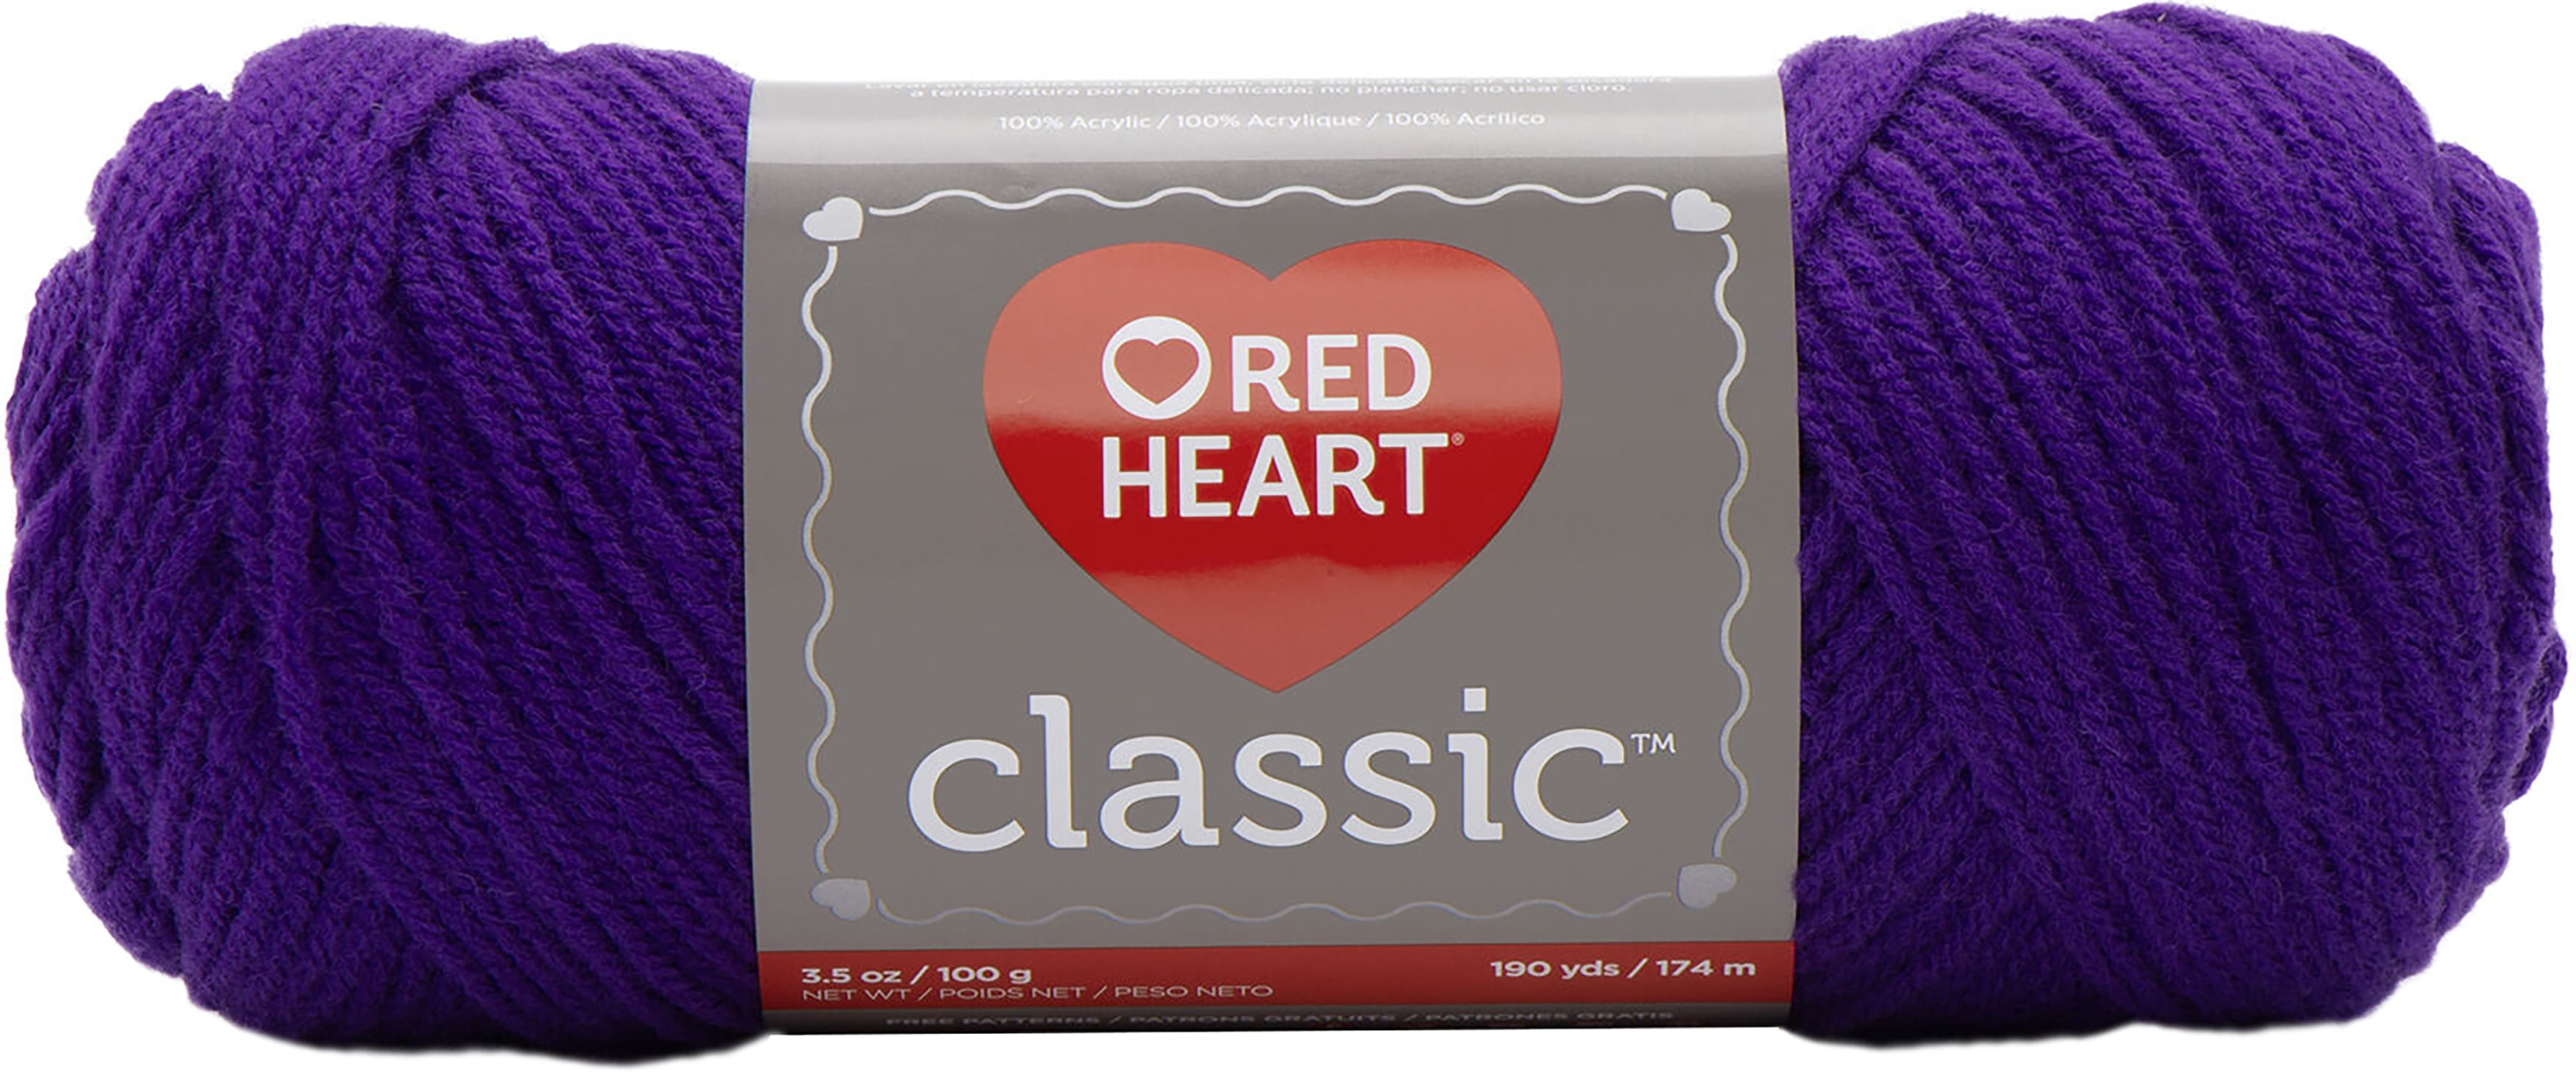 RED HEART Classic Acrylic Yarn Medium Weight #4 190 Yd Skein Black